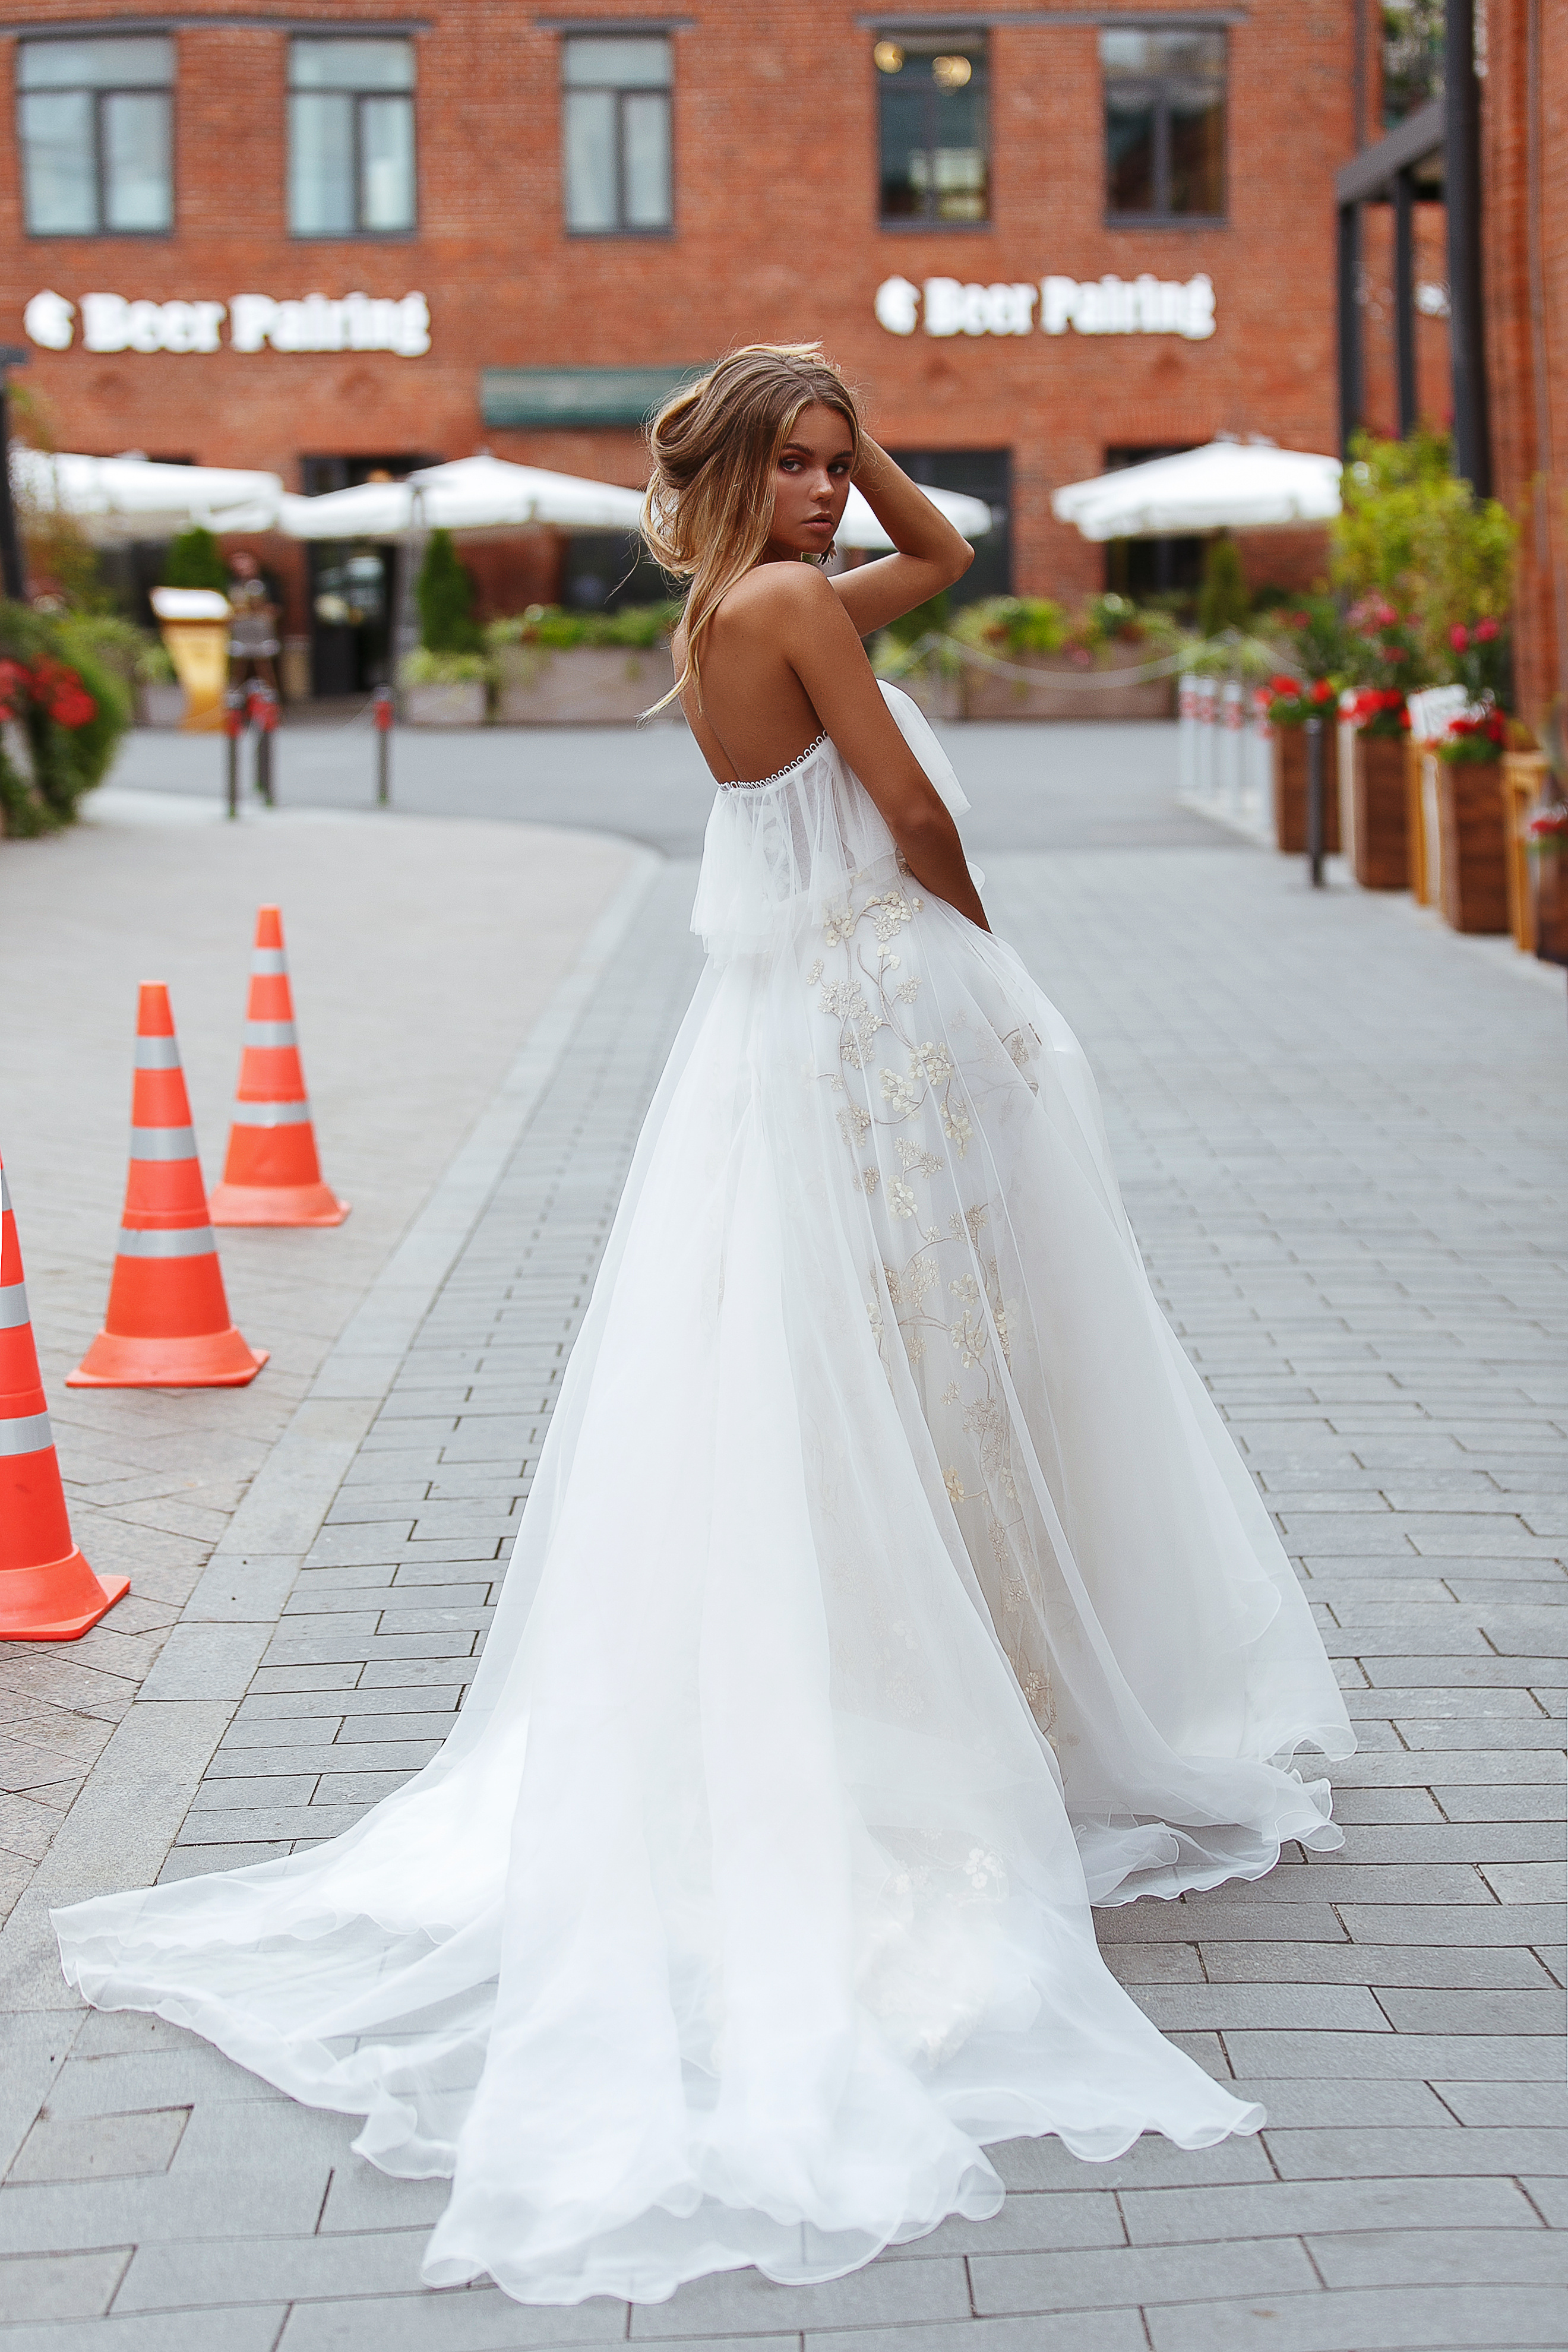 Купить свадебное платье «Илан» Рара Авис из коллекции Флорал Парадайз 2018 года в интернет-магазине